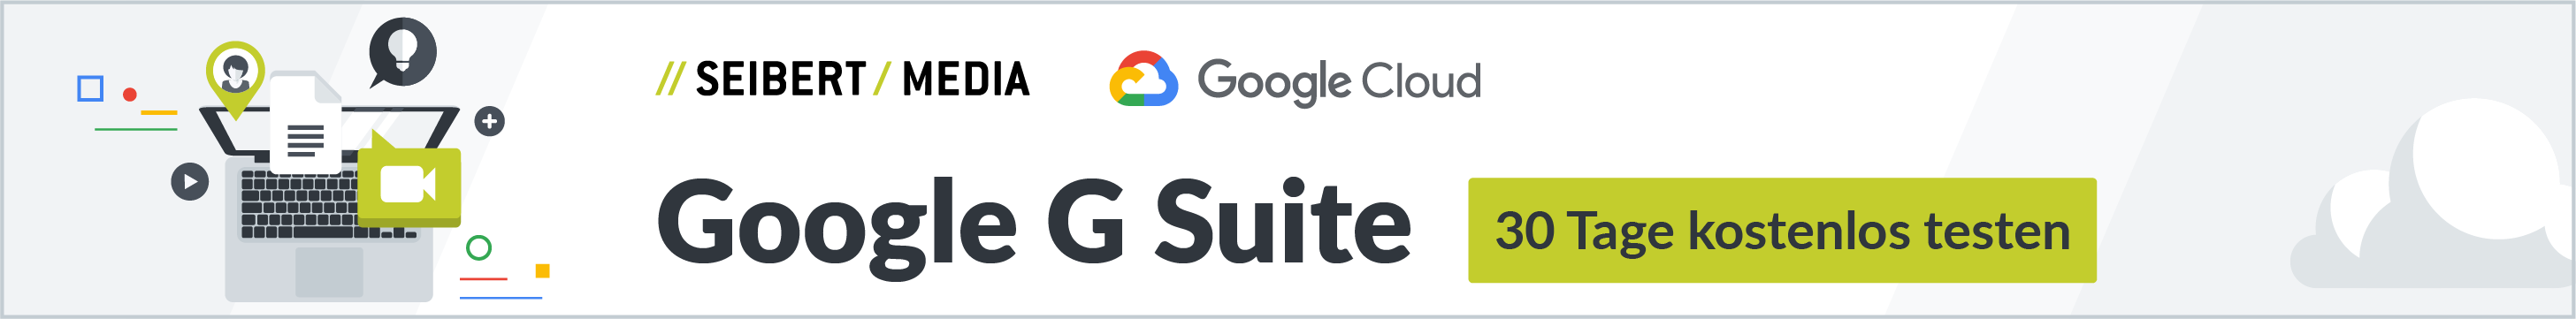 Google G Suite 30 Tage kostenlos testen